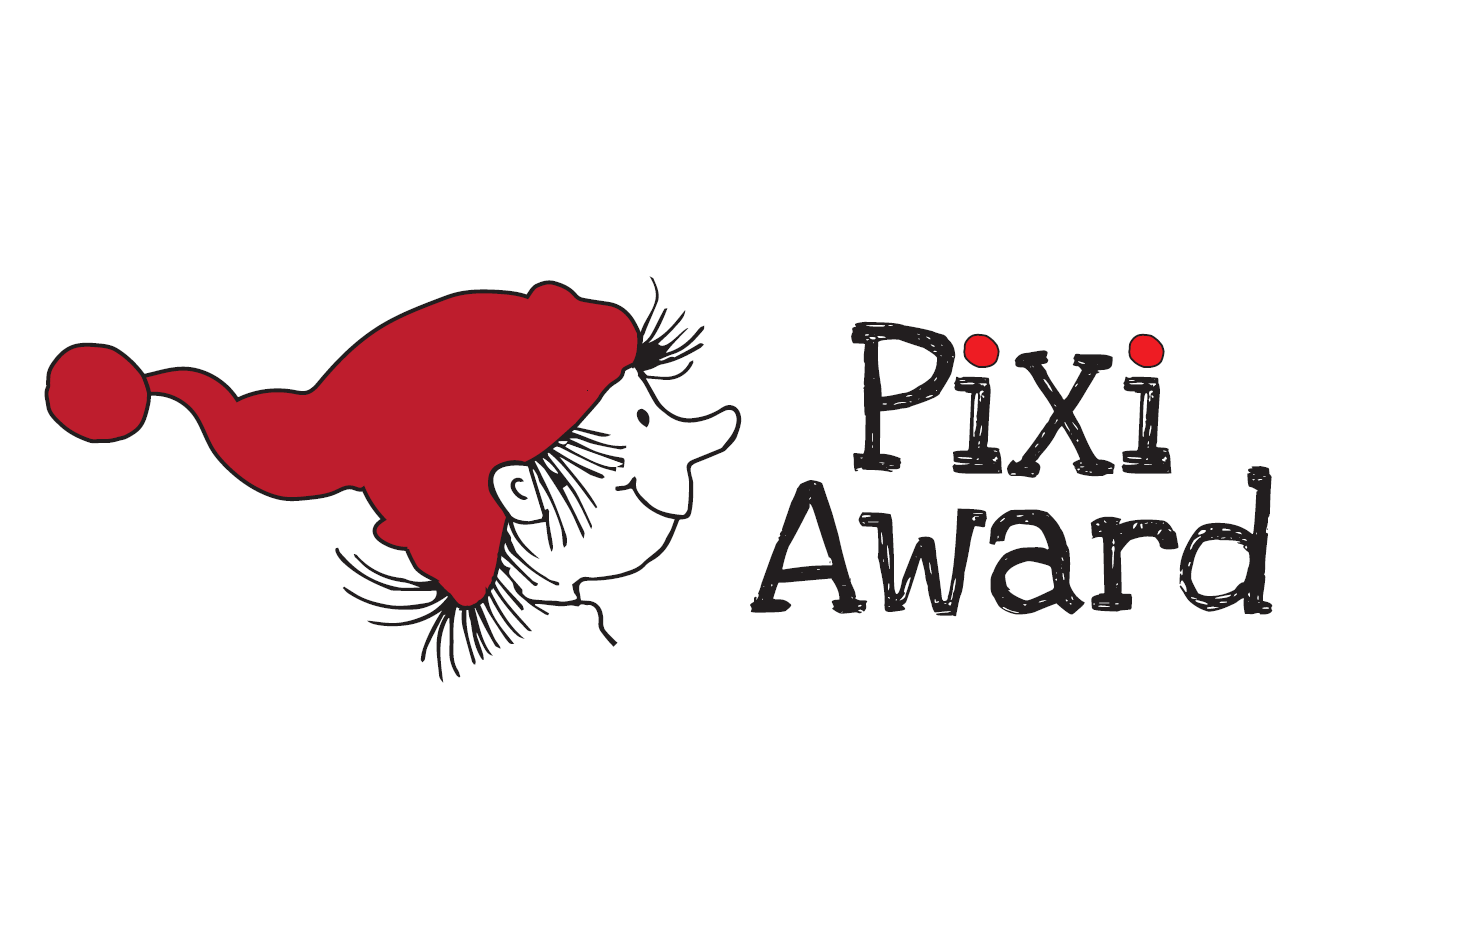 Pixi-book illustration contest - Pixi Award 2023